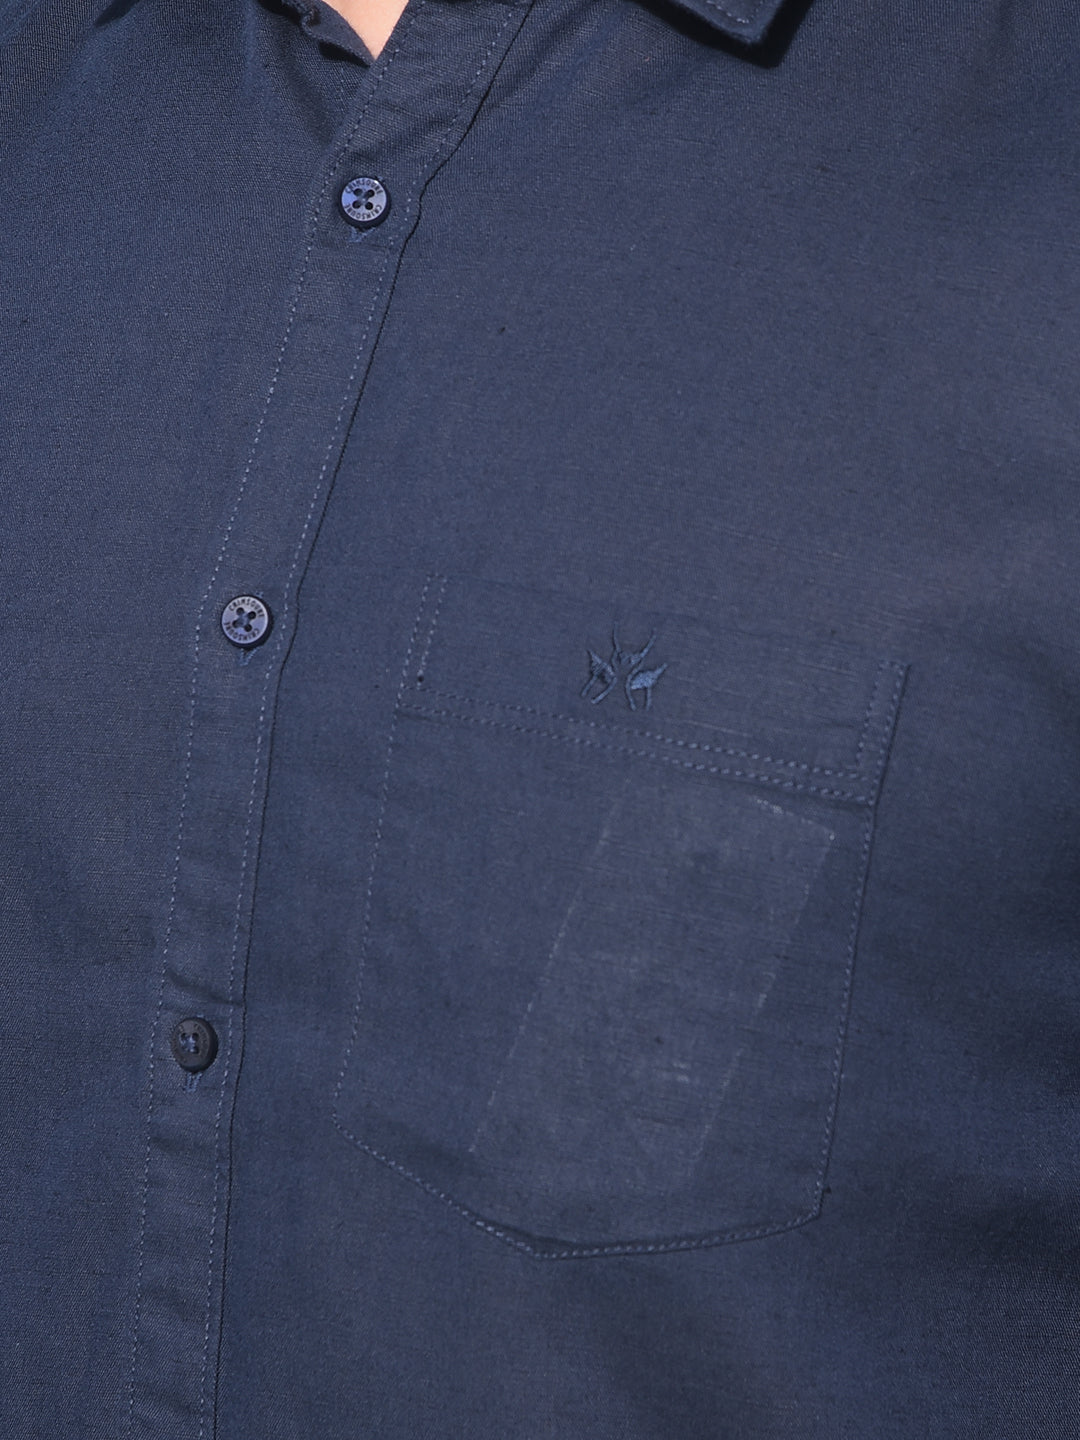 Navy Blue Linen Shirt-Men Shirts-Crimsoune Club